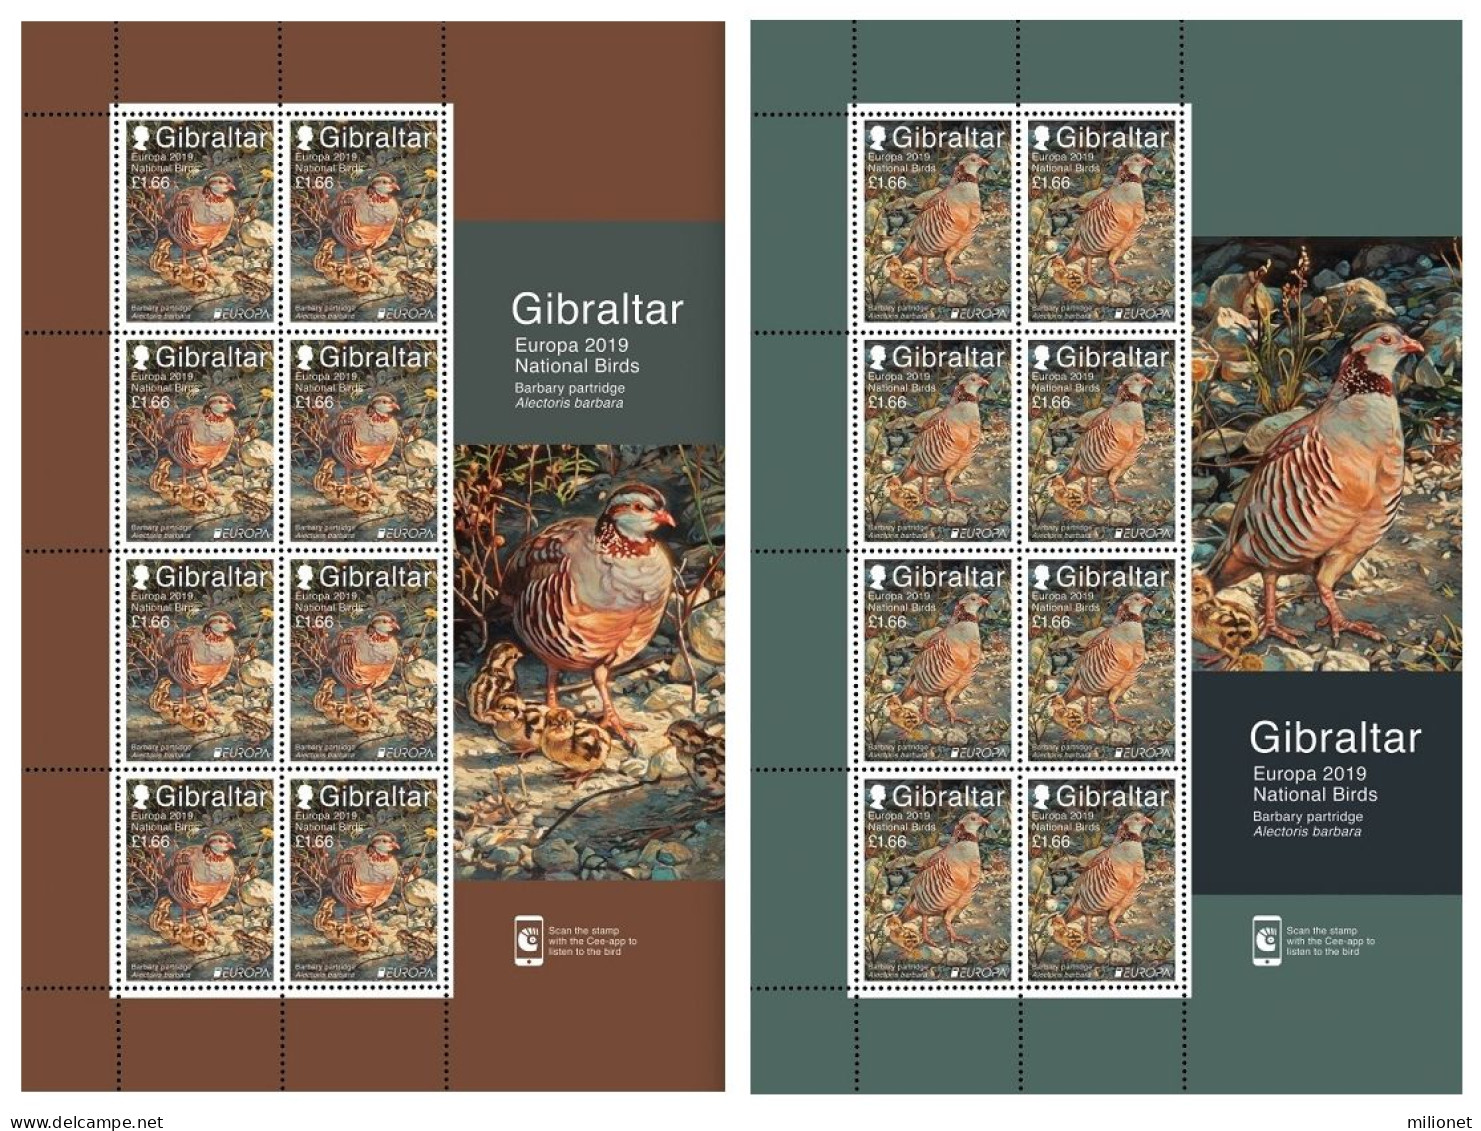 SALE!!! GIBRALTAR 2019 EUROPA NATIONAL BIRDS 2 Sheetlets Of 8 Stamps MNH ** - 2019